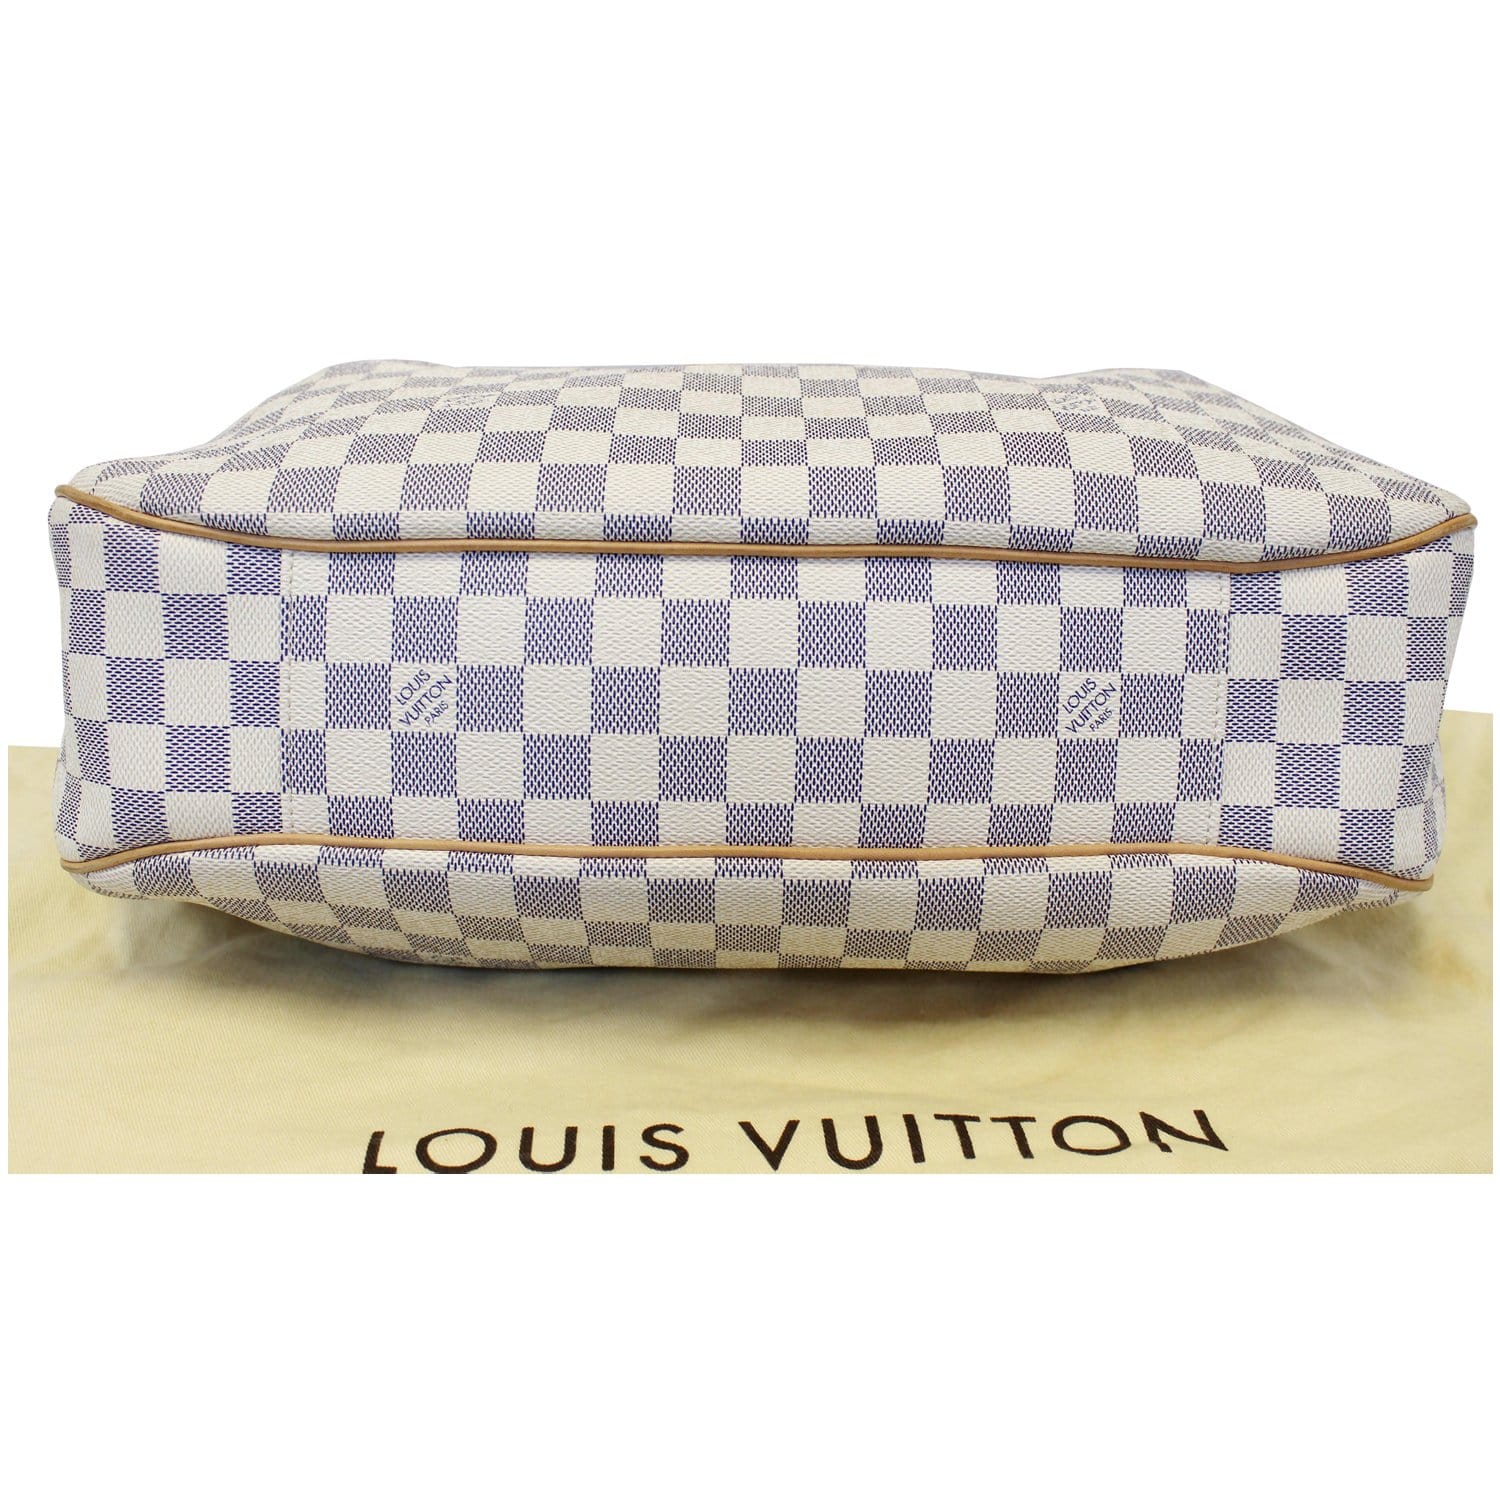 Azur - Vuitton - N51261 – sac alma louis vuitton neuf - Louis